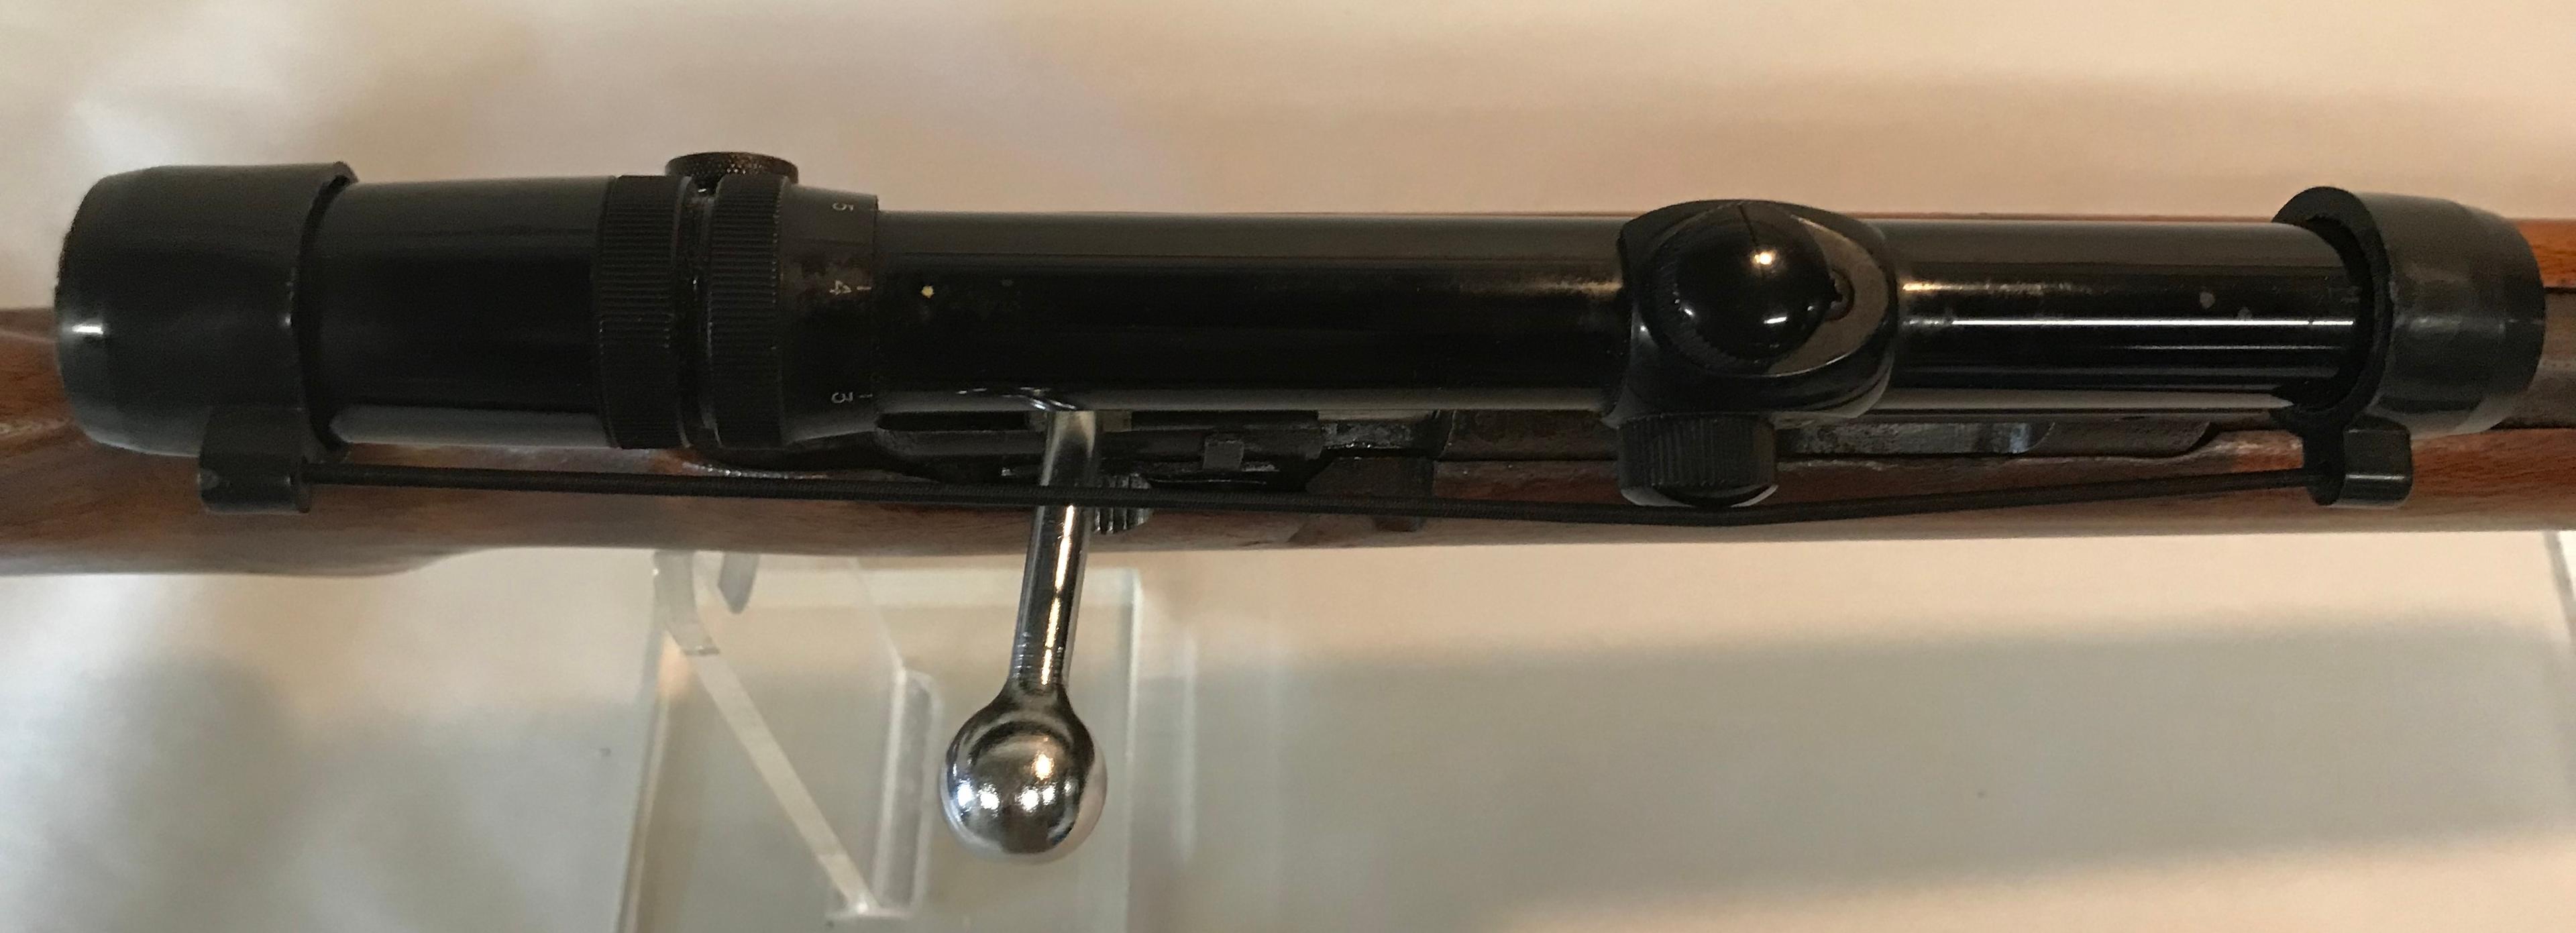 Marlin Model 81-DL .22 Rifle